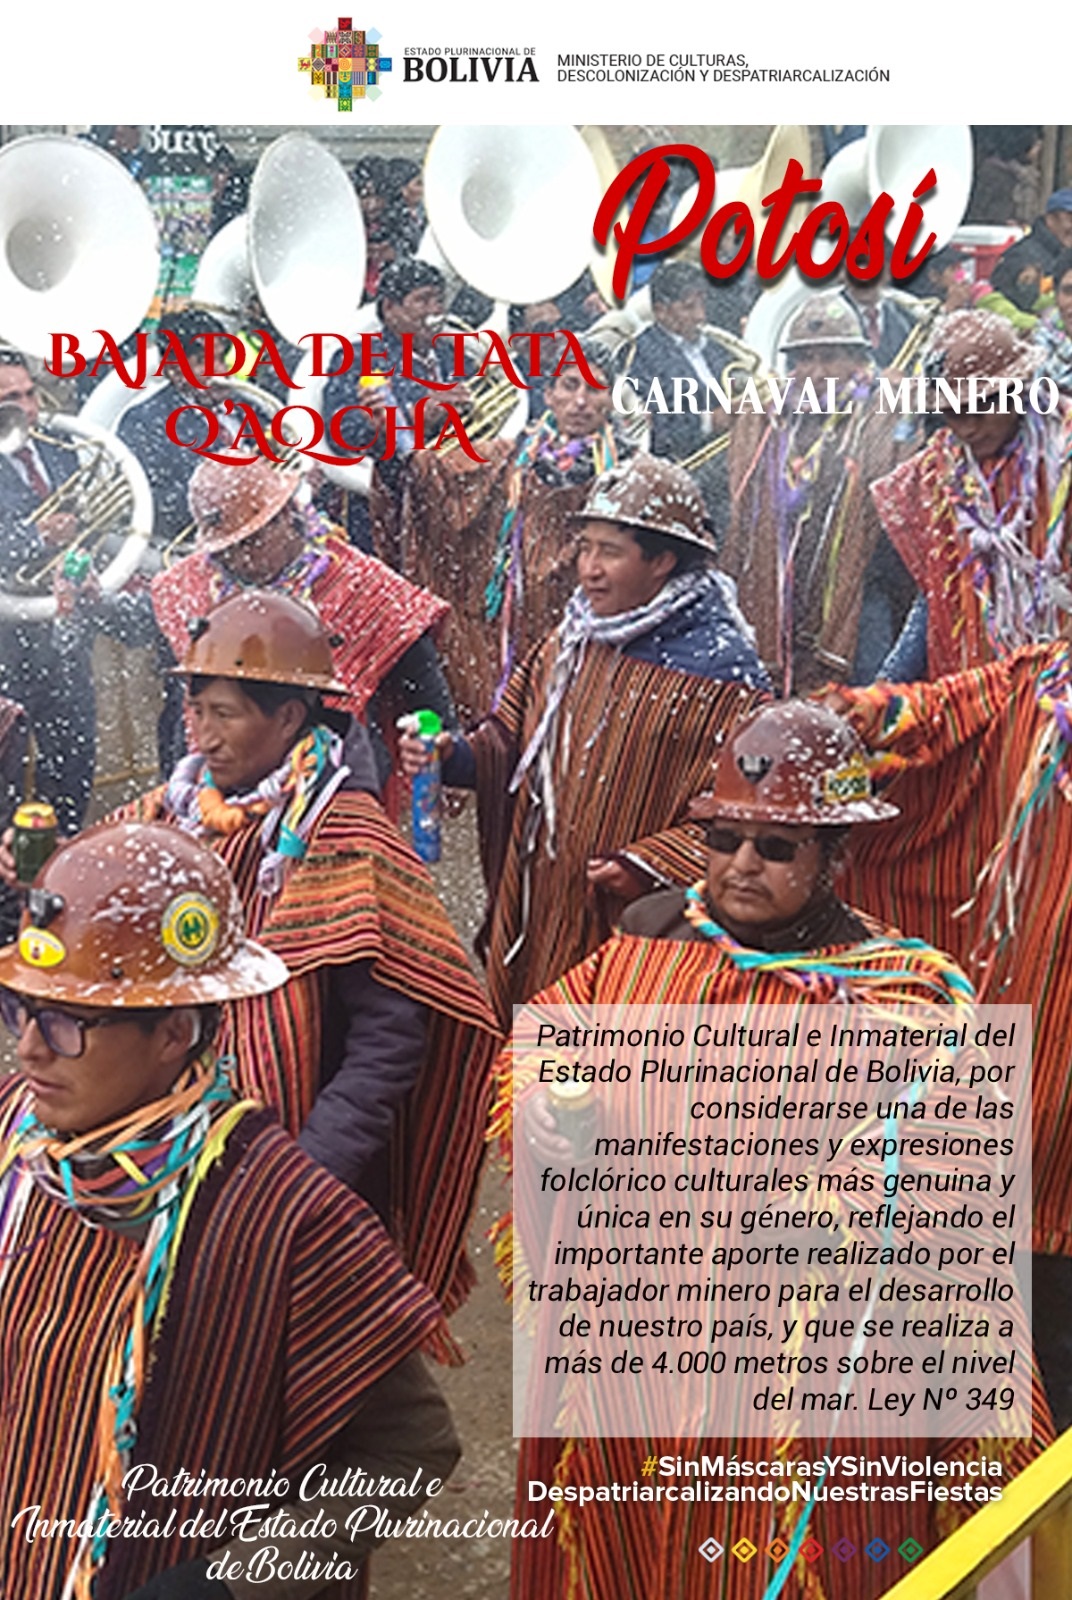 Potosí Bajada del Tata Q'aqcha - Carnaval Minero - Potosí Carnaval Minero